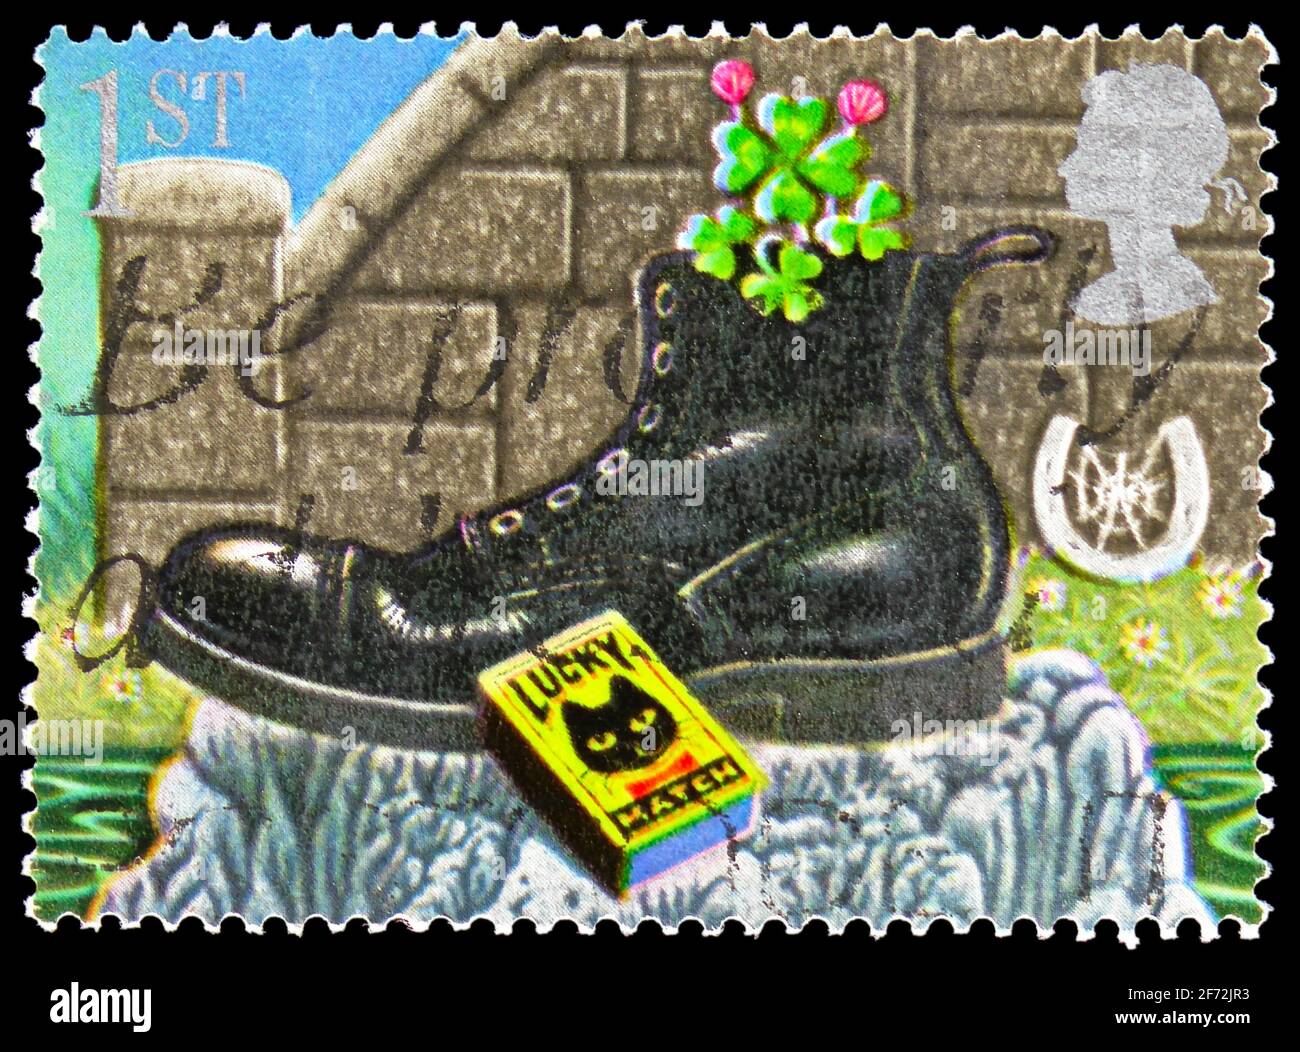 MOSCOU, RUSSIE - 22 DÉCEMBRE 2020: Timbre-poste imprimé au Royaume-Uni montre un trèfle à quatre feuilles dans la boîte de Boot and Match, timbres de voeux 1991 - Symb Banque D'Images